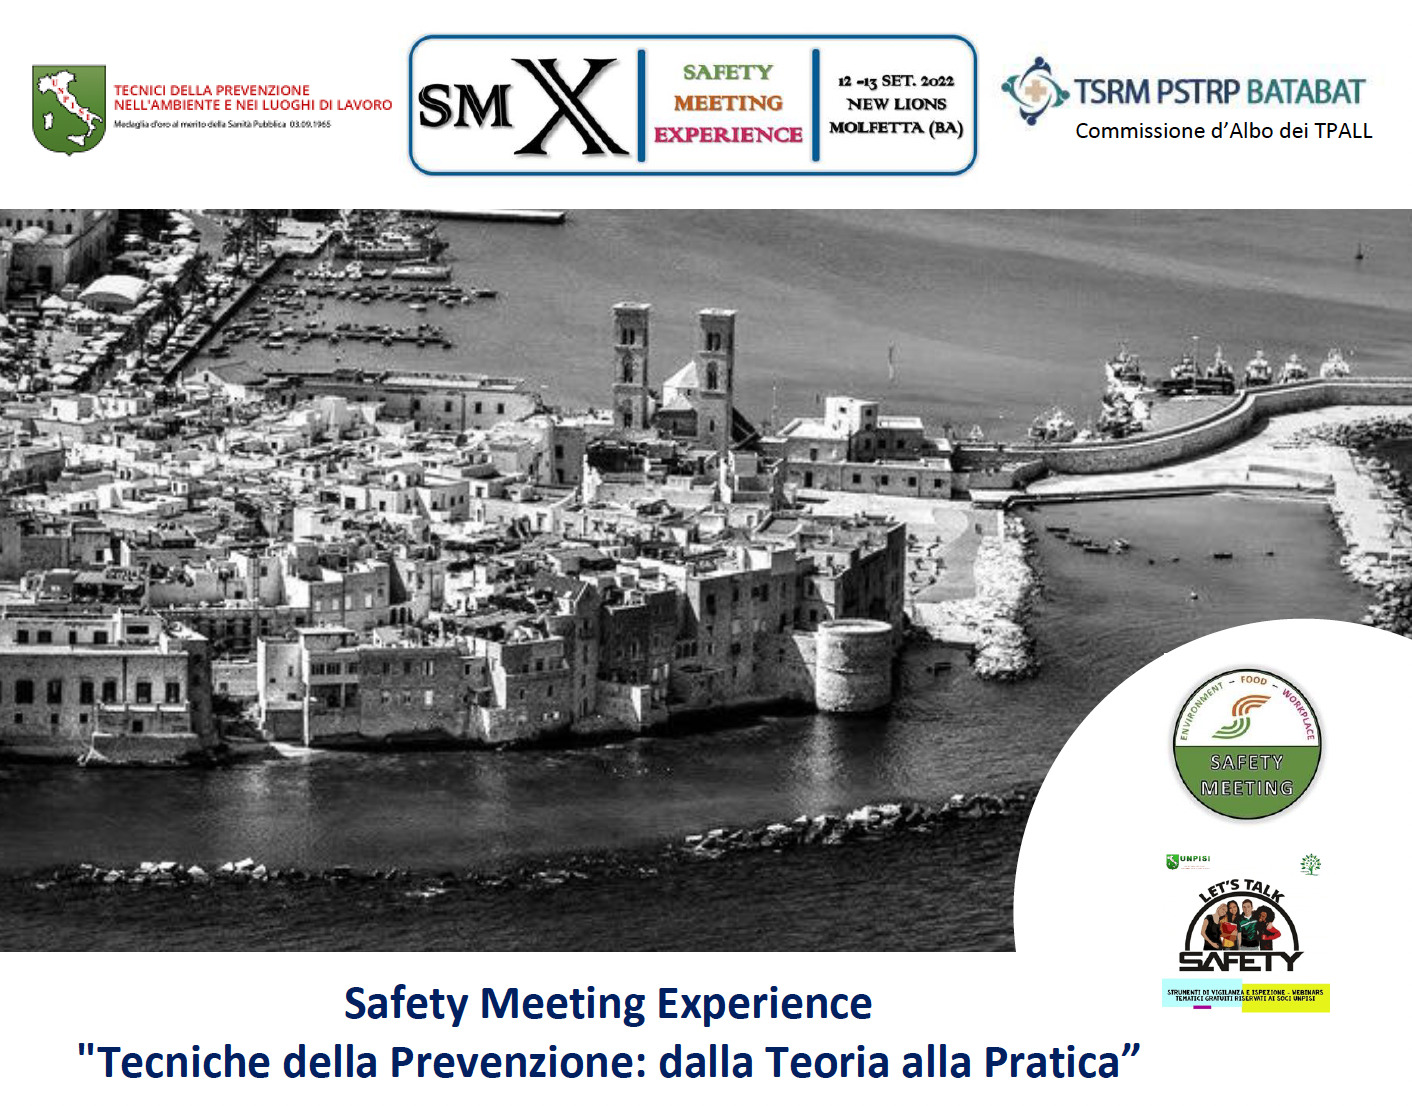 Evento Formativo – Safety Meeting Experience “Tecniche della Prevenzione: dalla Teoria alla Pratica” – 12 e 13 settembre 2022 – ATS UNPISI e Ordine TSRM PSTRP BA TA BT